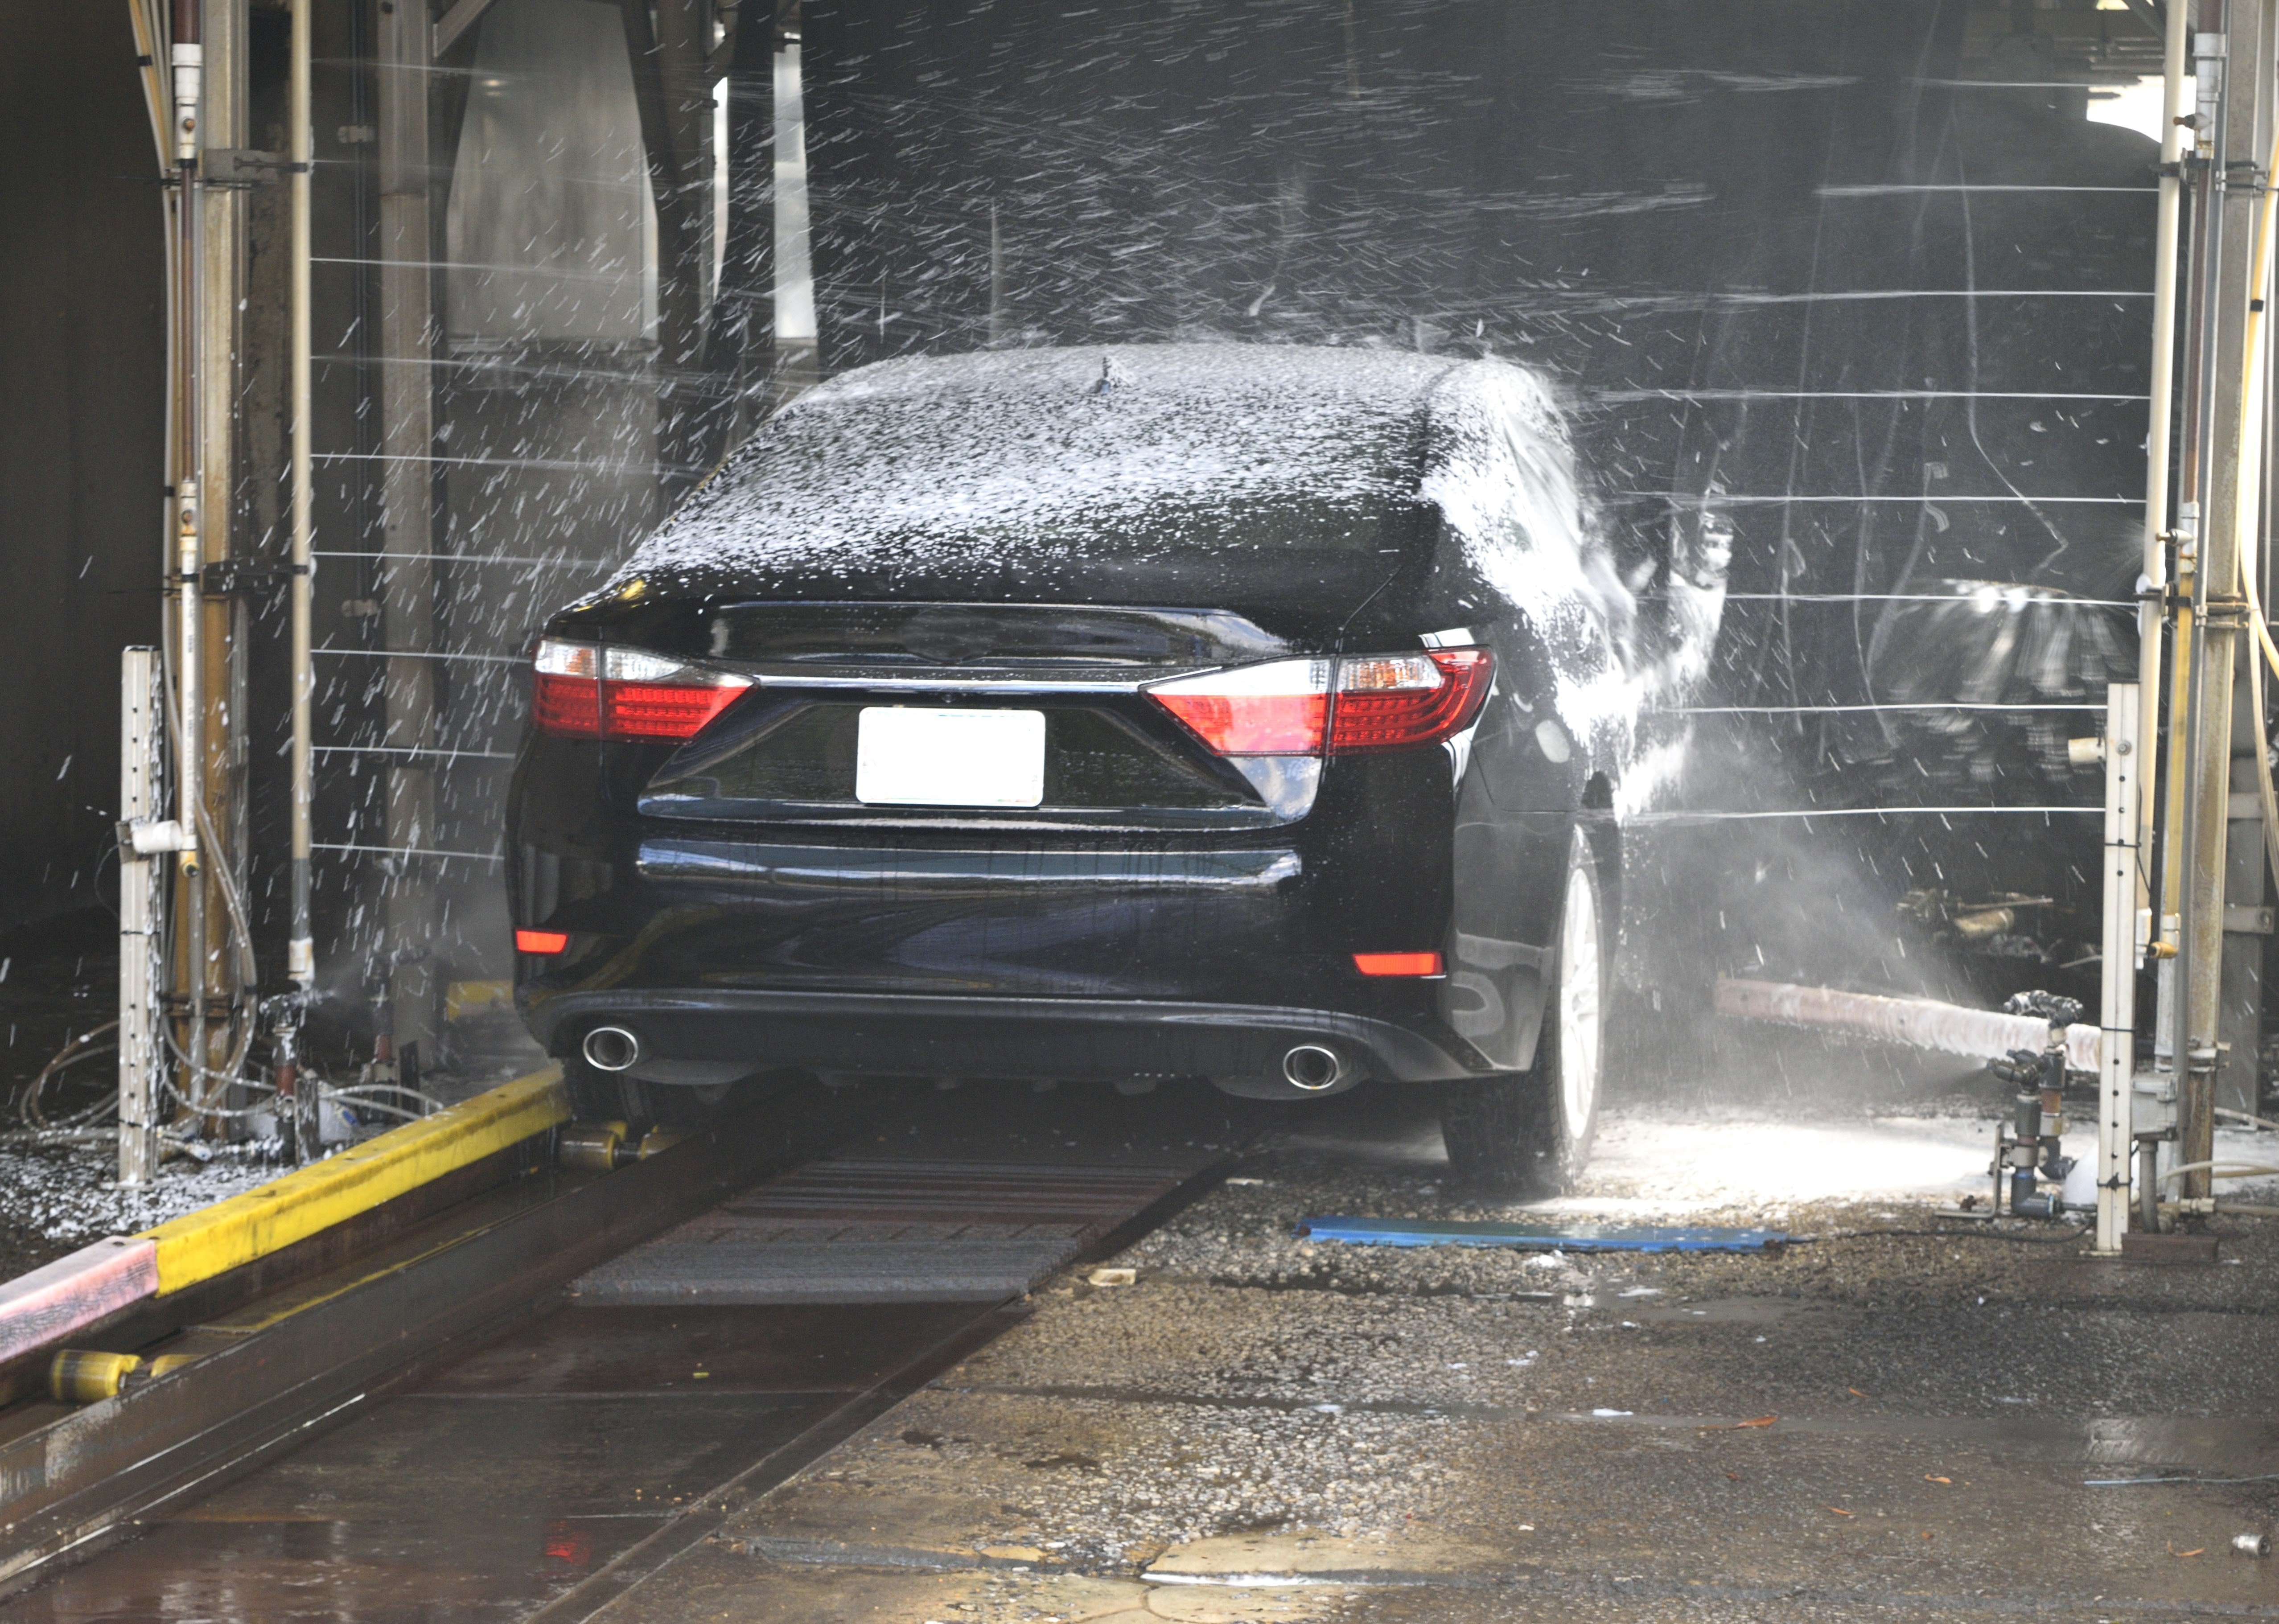 Car entering car wash